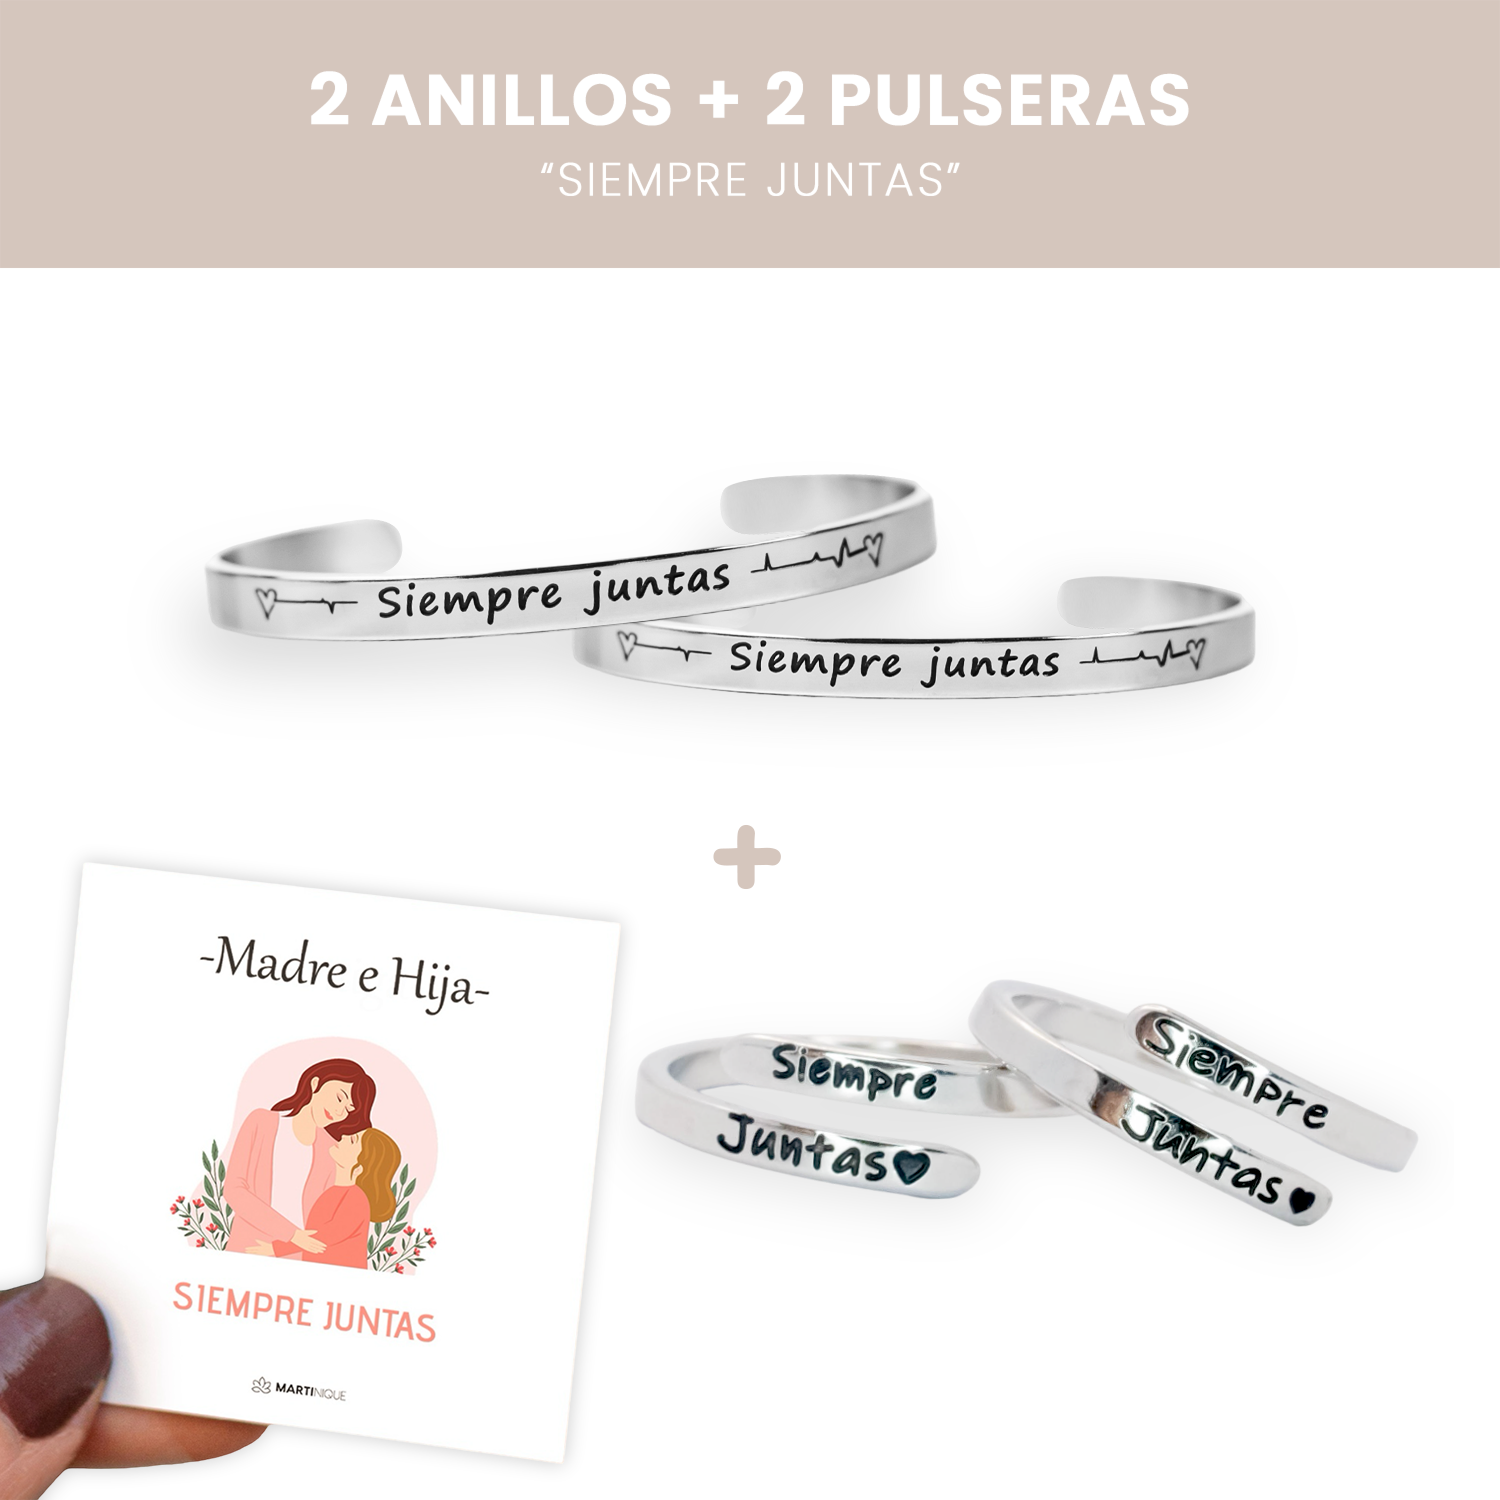 2 Pulseras “Siempre juntas” + 2 anillos “Siempre juntas” 💖 + Tarjetas de regalo 🎁